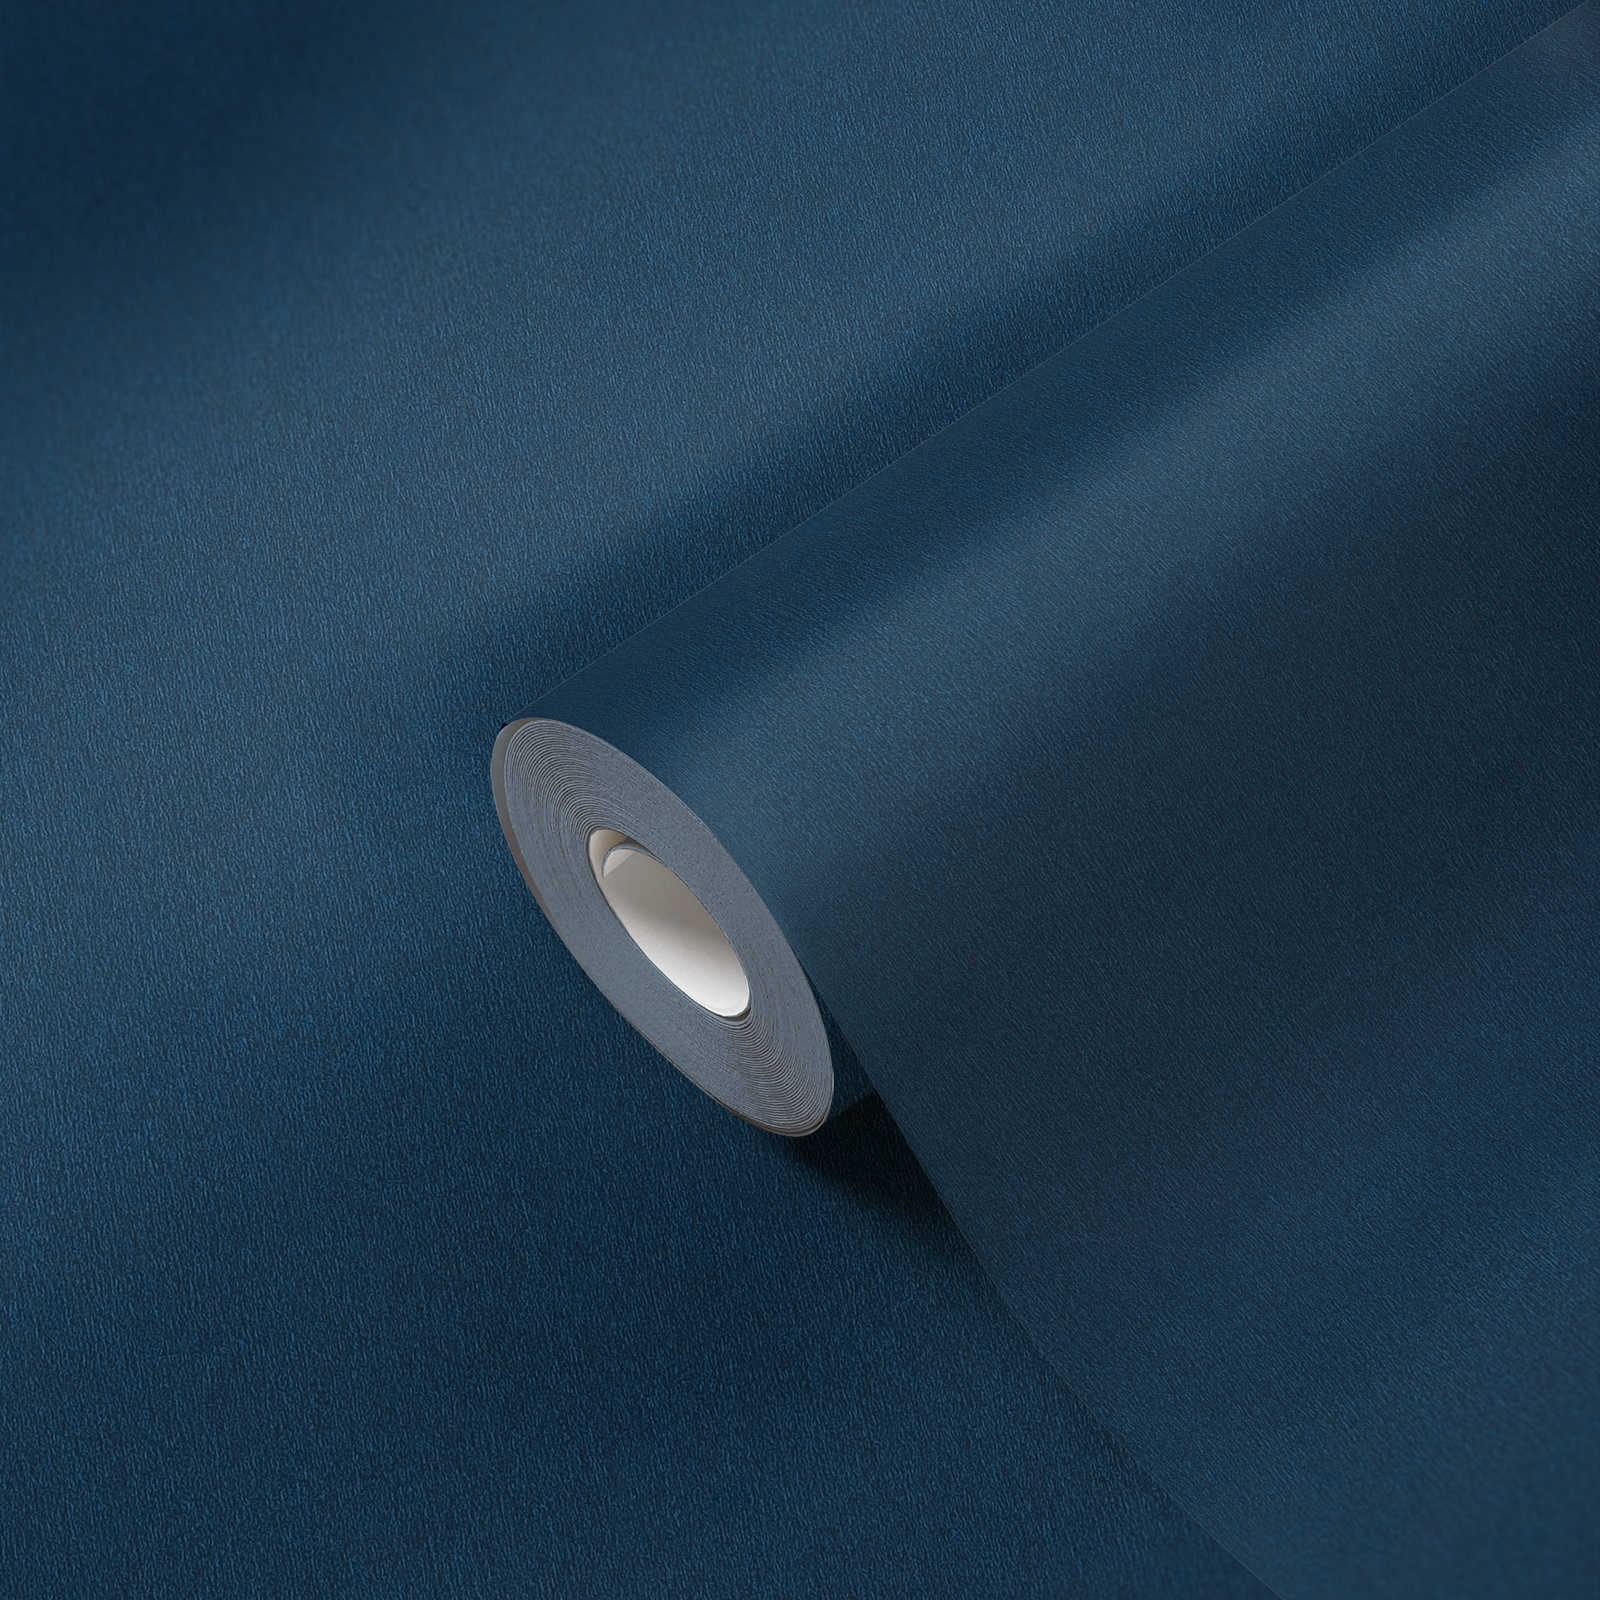             Papier peint bleu foncé, bleu marine uni avec hachures de couleur
        